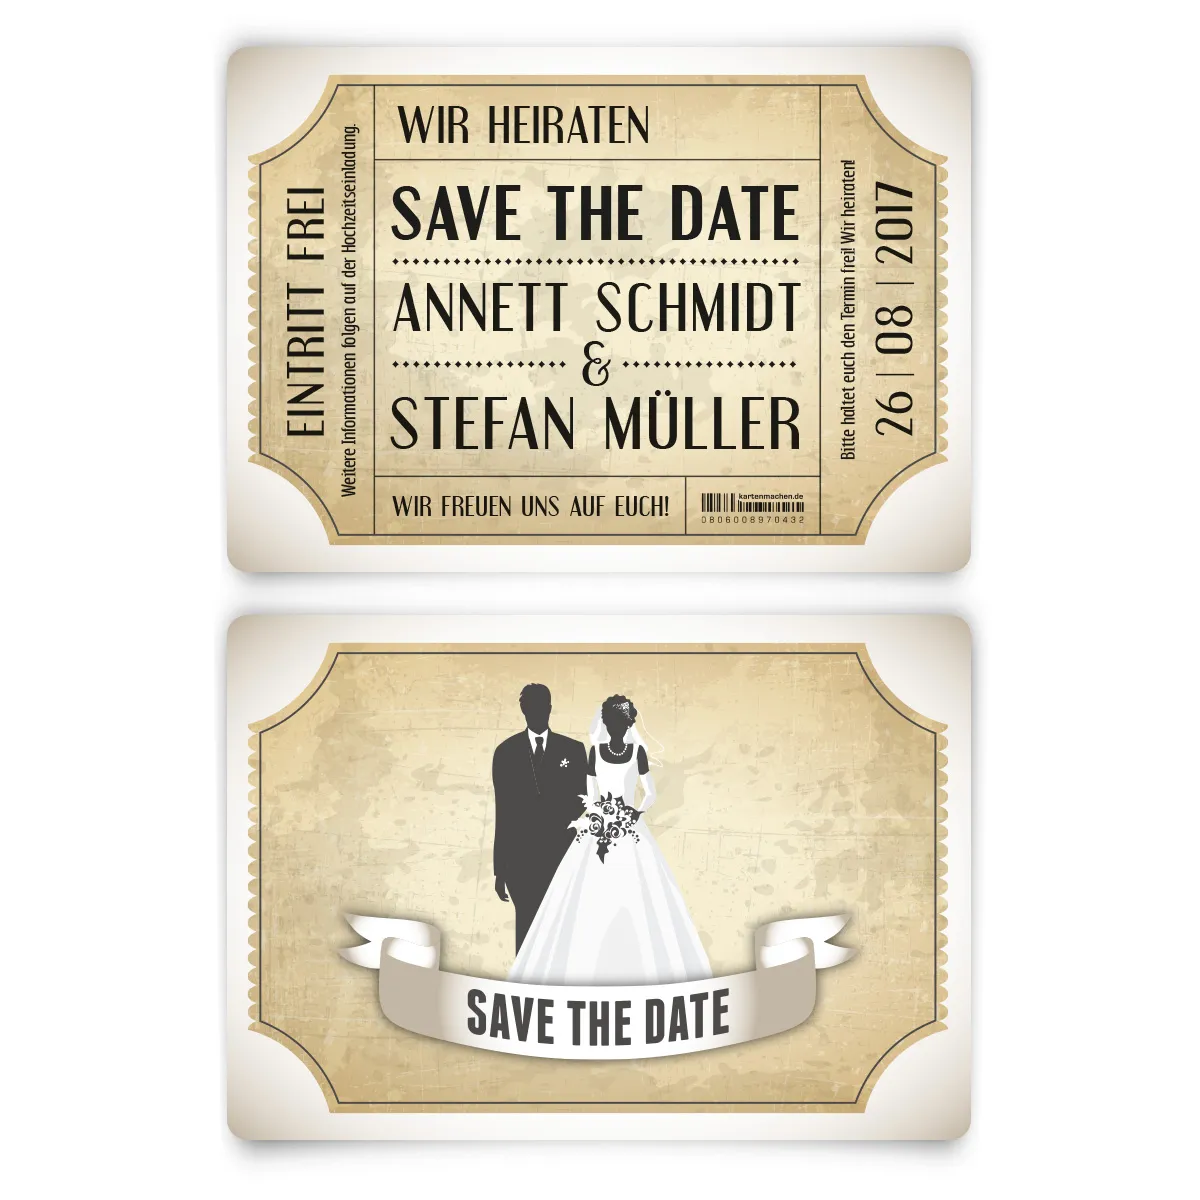 Save the Date Karten zur Hochzeit - Vintage Brautpaar in Weiß